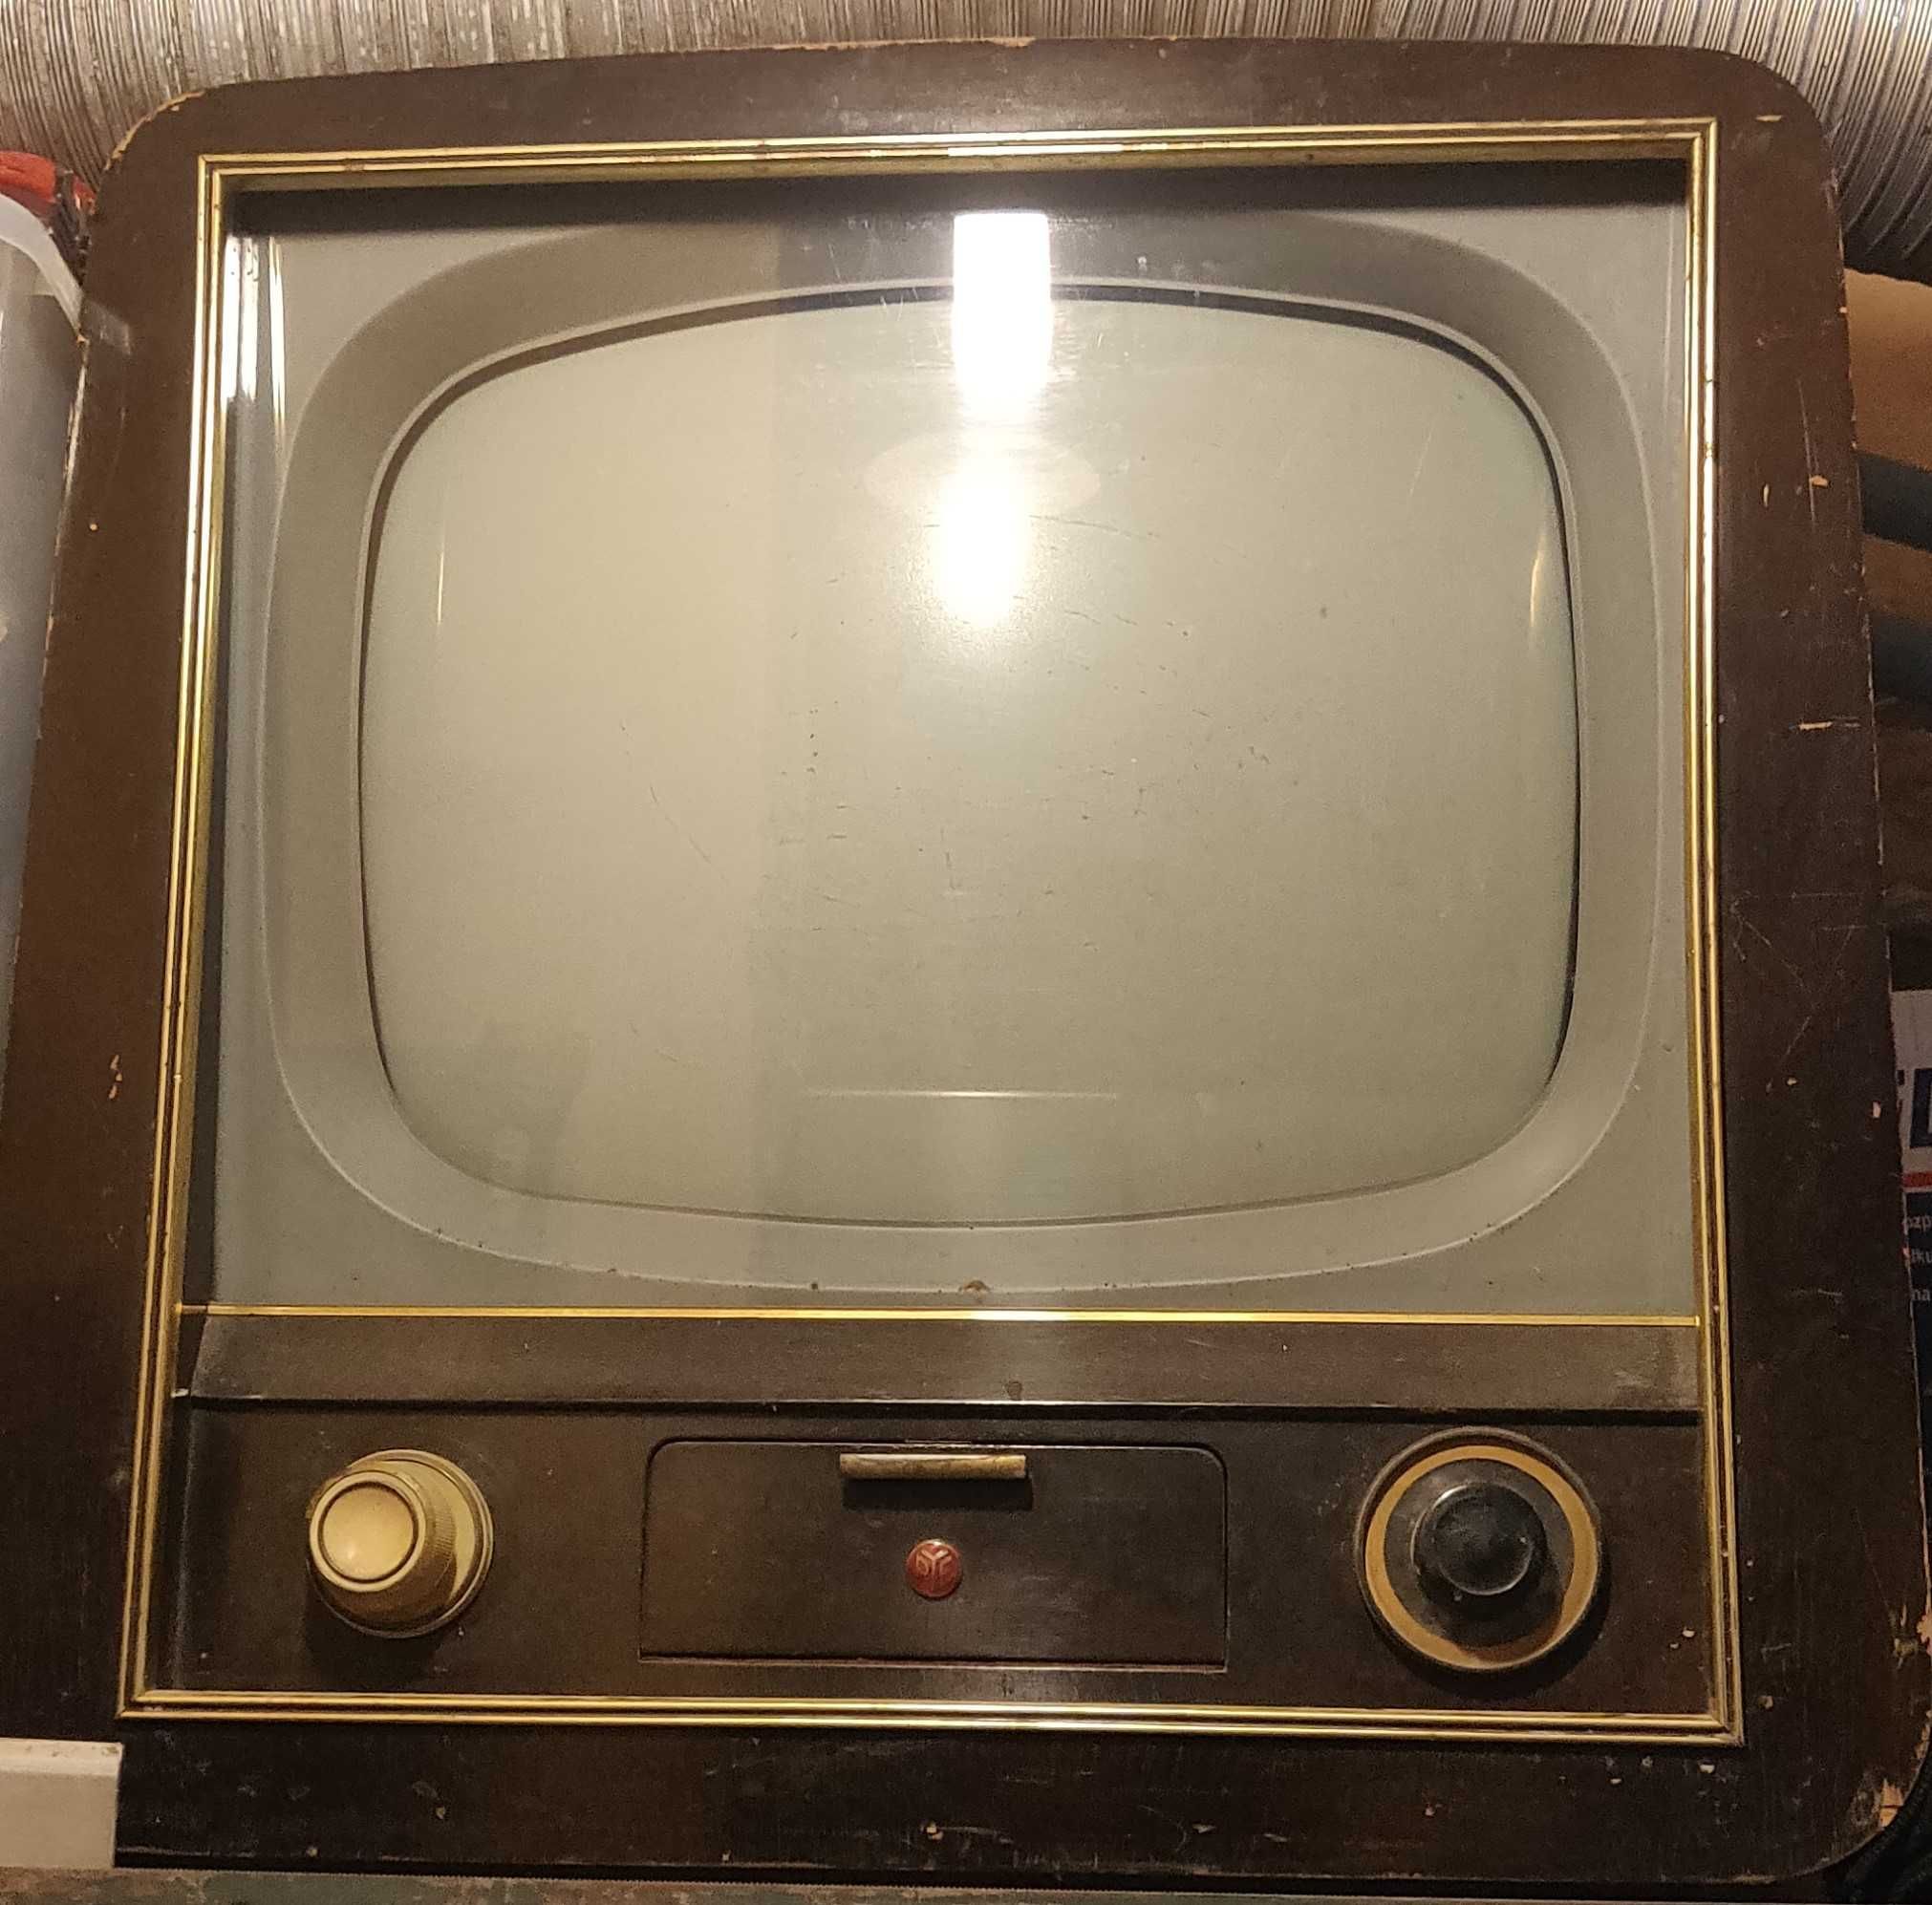 Stary kolekcjonerski, ok. 70 letni telewizor lampowy. Zabytek techniki